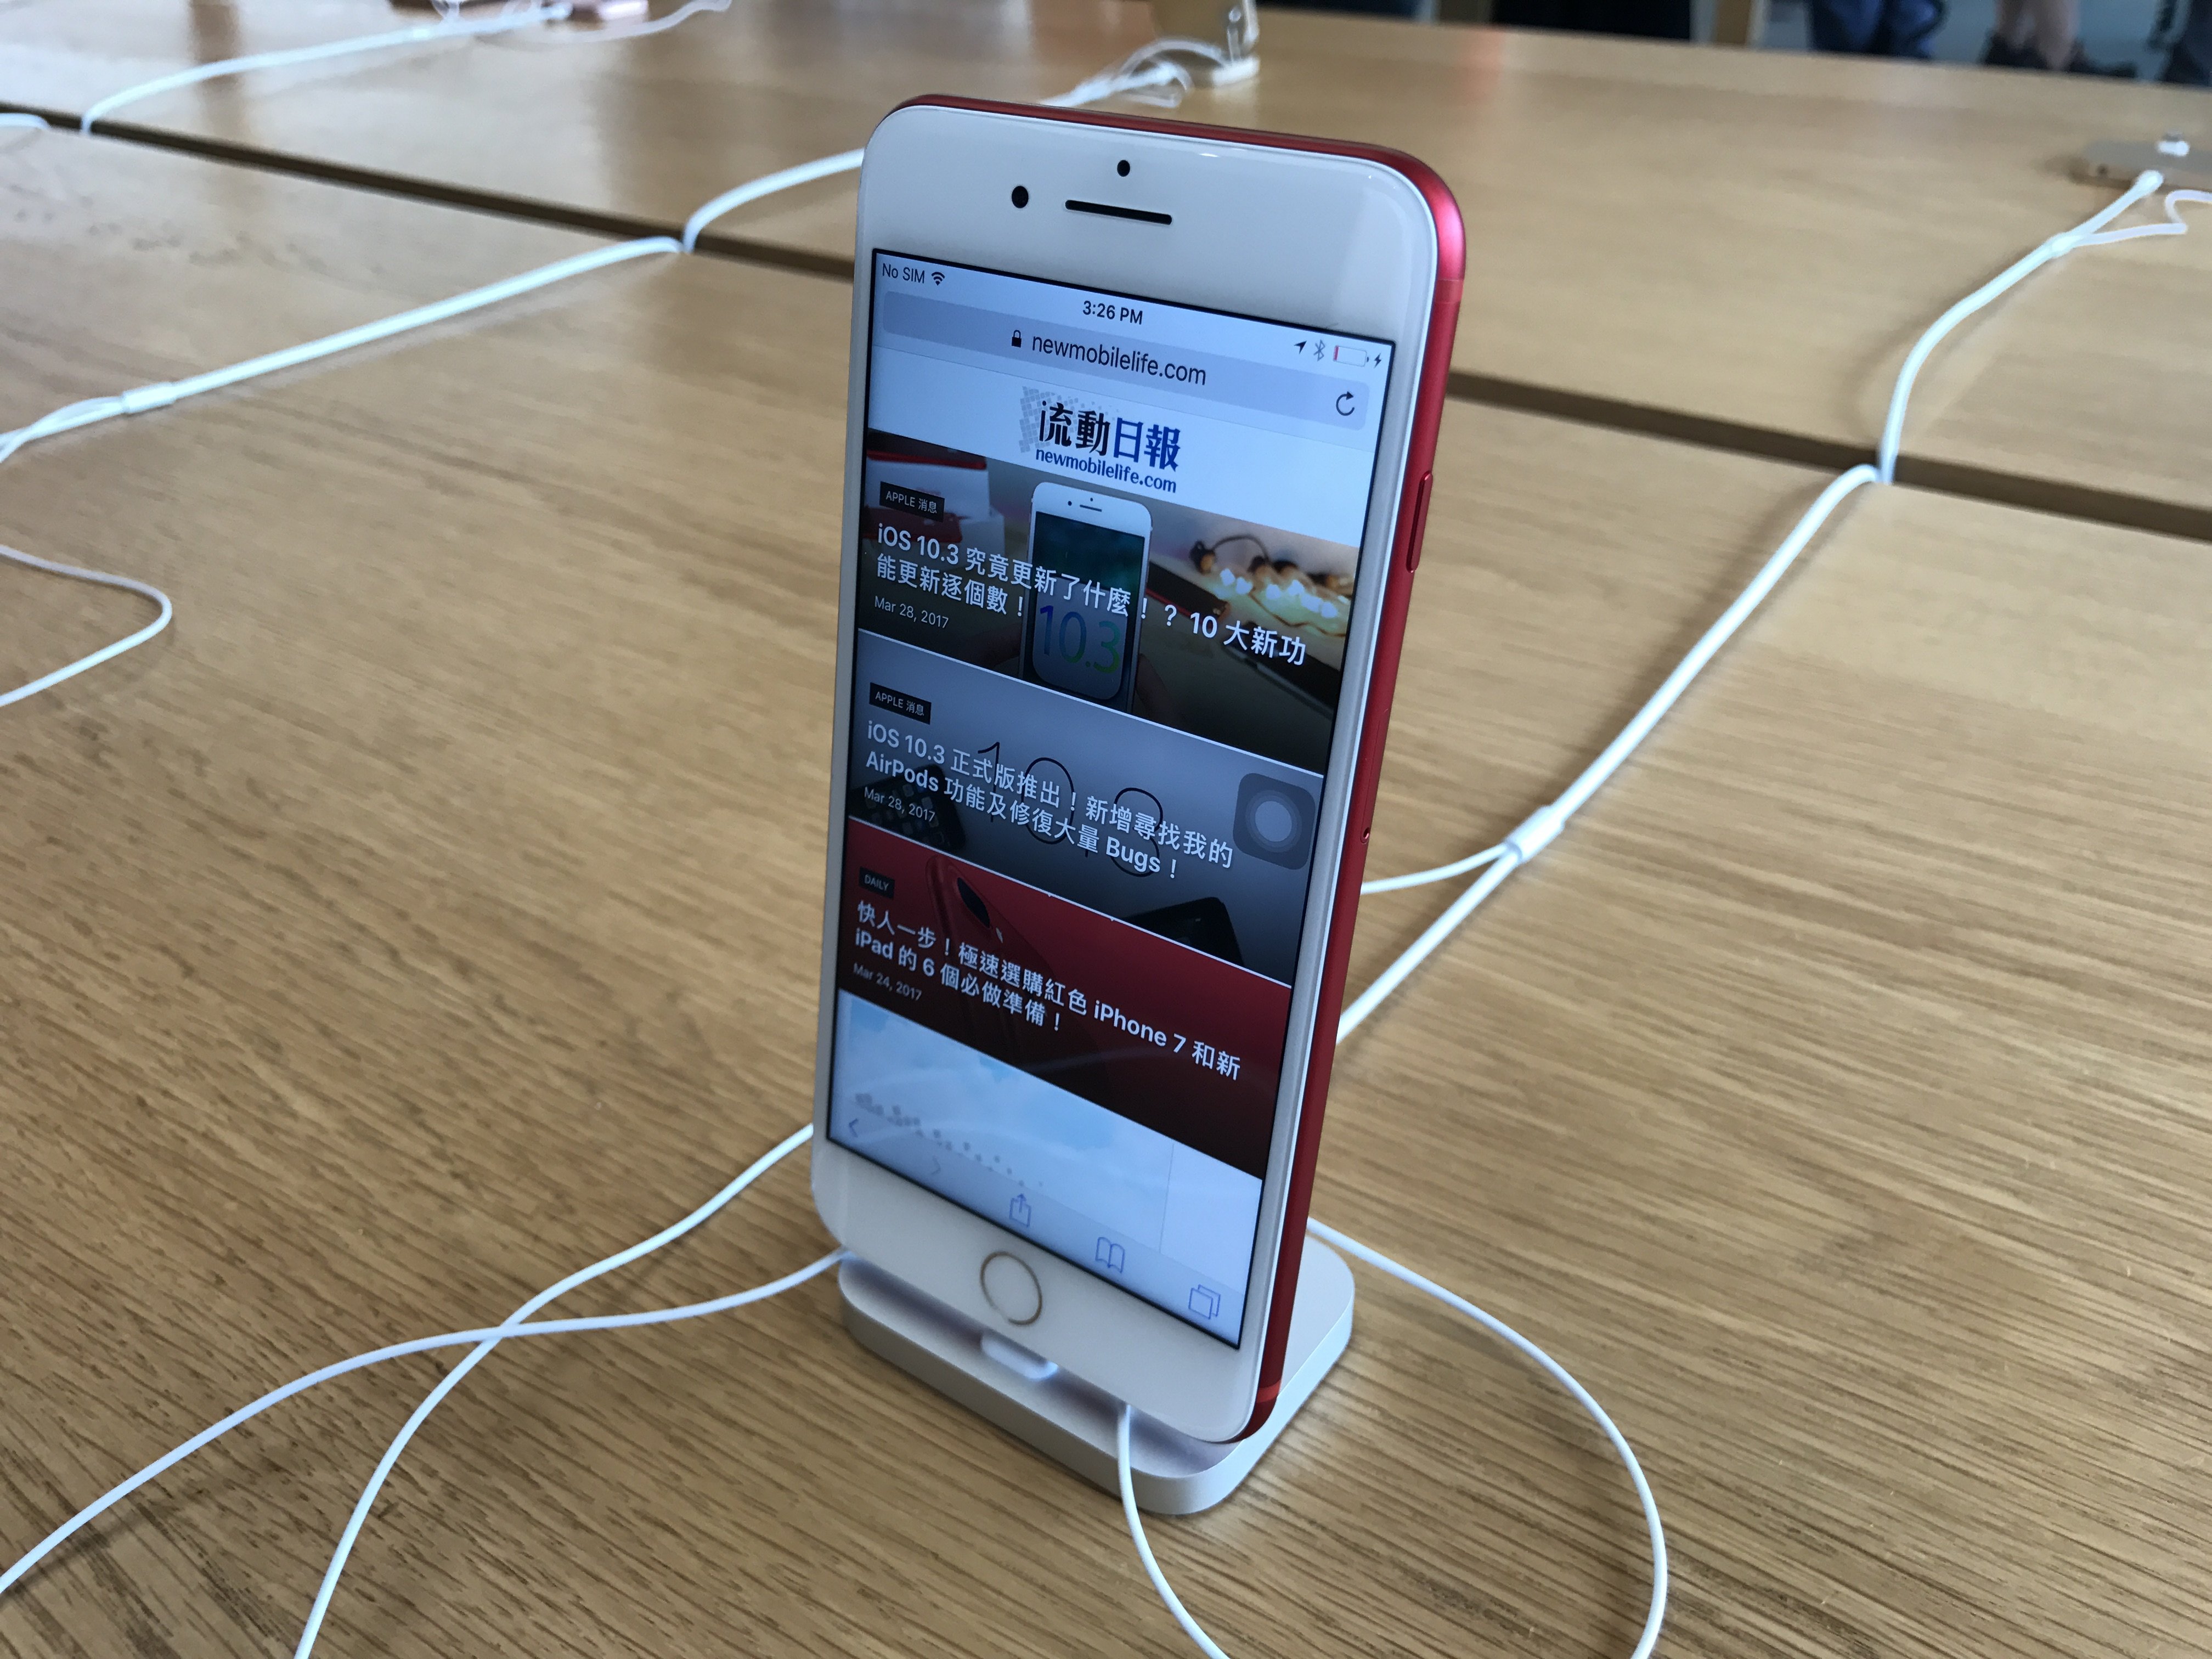 紅色iphone 7 變 蟹貨 網民低原價hk 500 賤售 New Mobilelife 流動日報